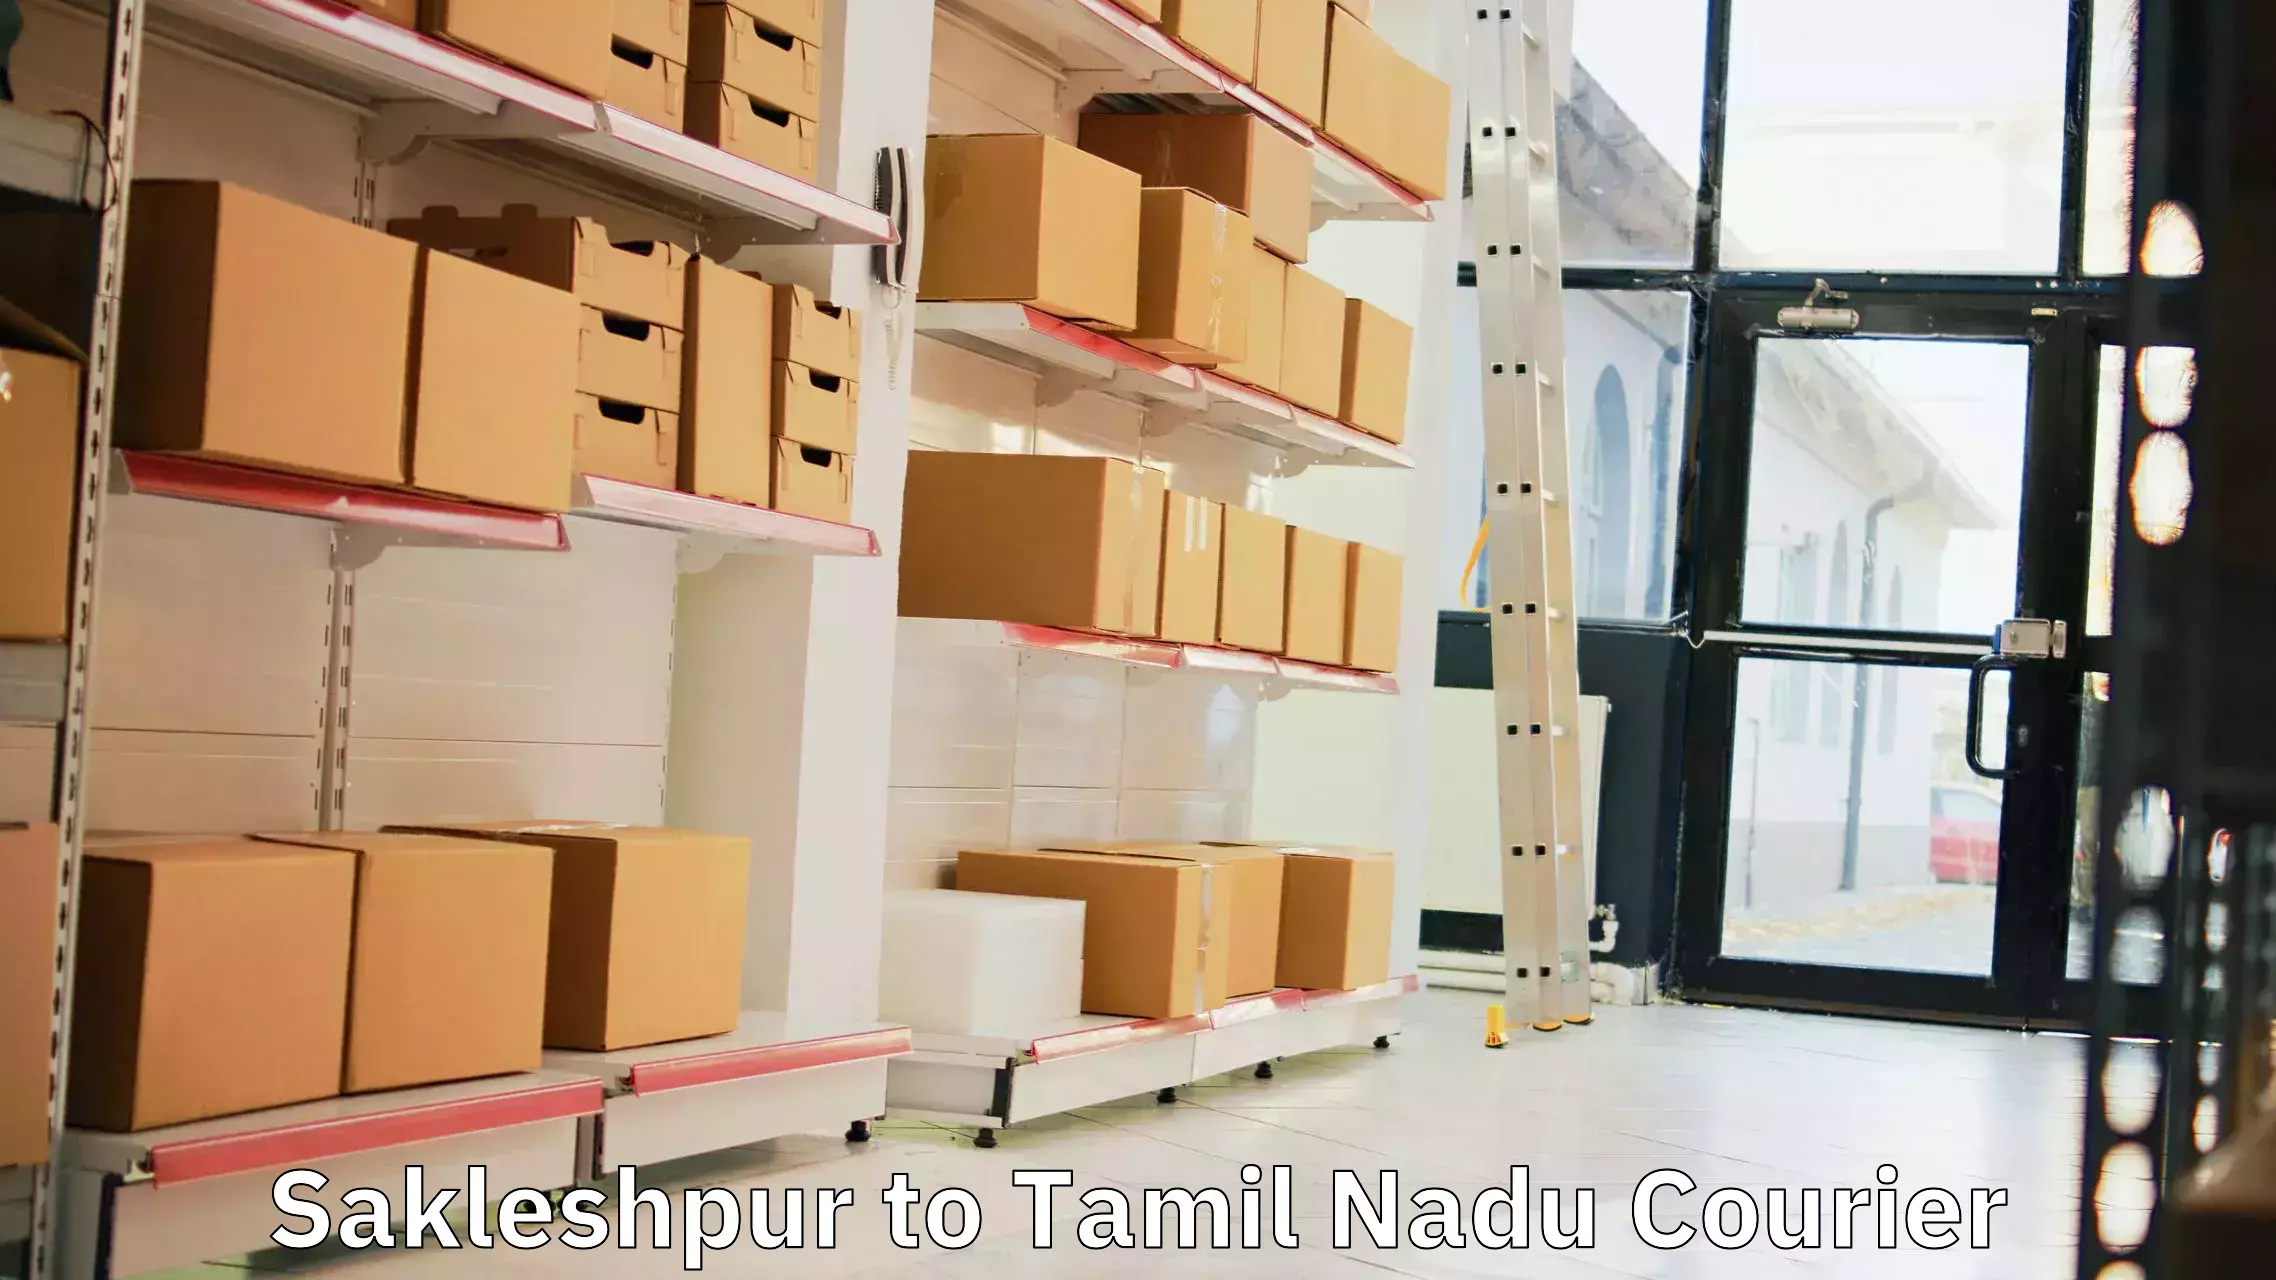 Express logistics providers in Sakleshpur to Tamil Nadu